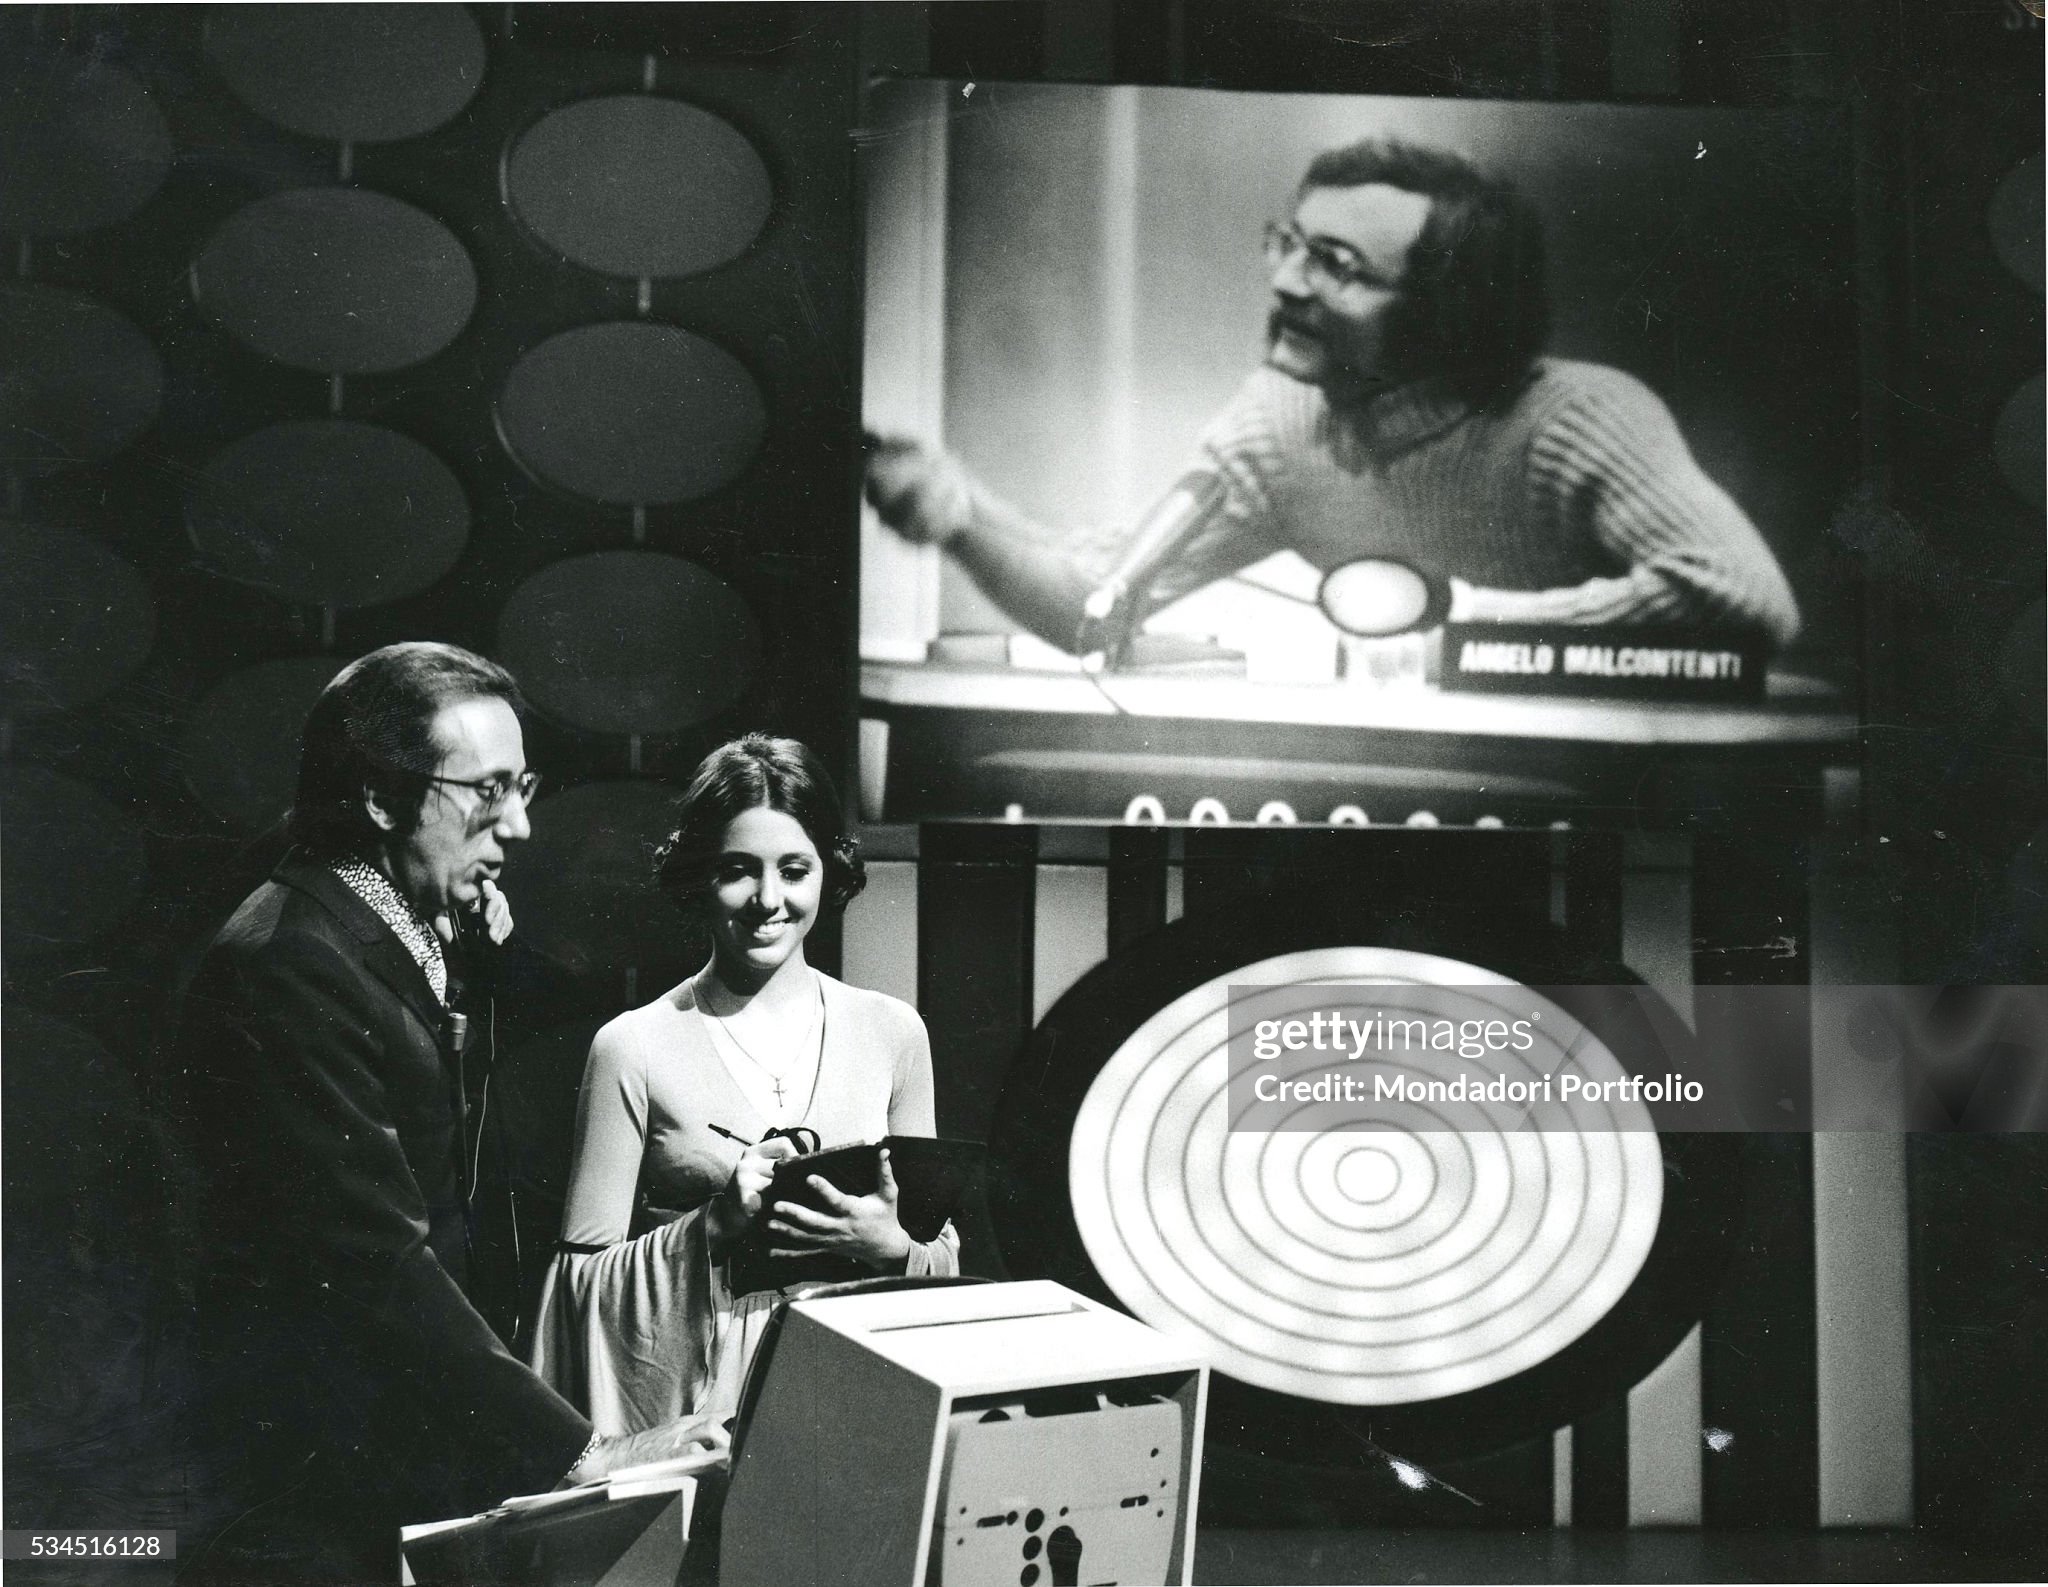 Mike Bongiorno beside Sabina Ciuffini in the TV quiz show 'Rischiatutto' in Milan in 1970. On the monitor, the competitor Angelo Malcontenti. 